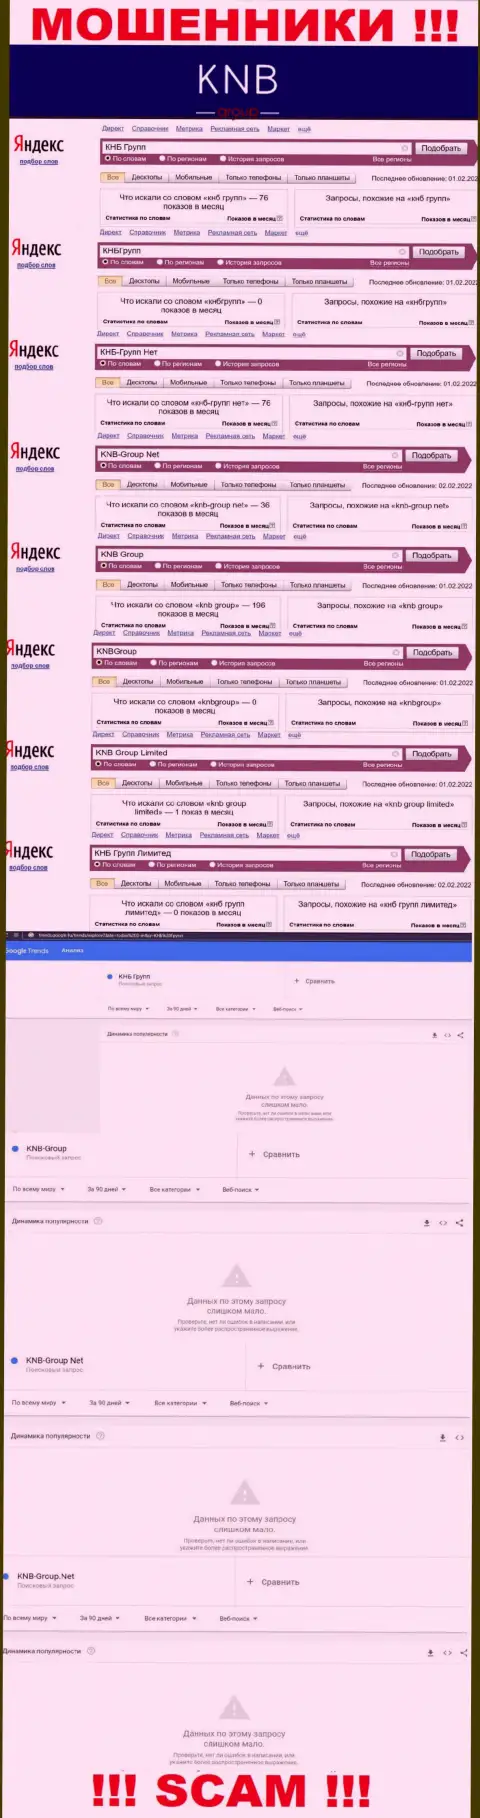 Скриншот результатов online запросов по противоправно действующей компании KNB Group